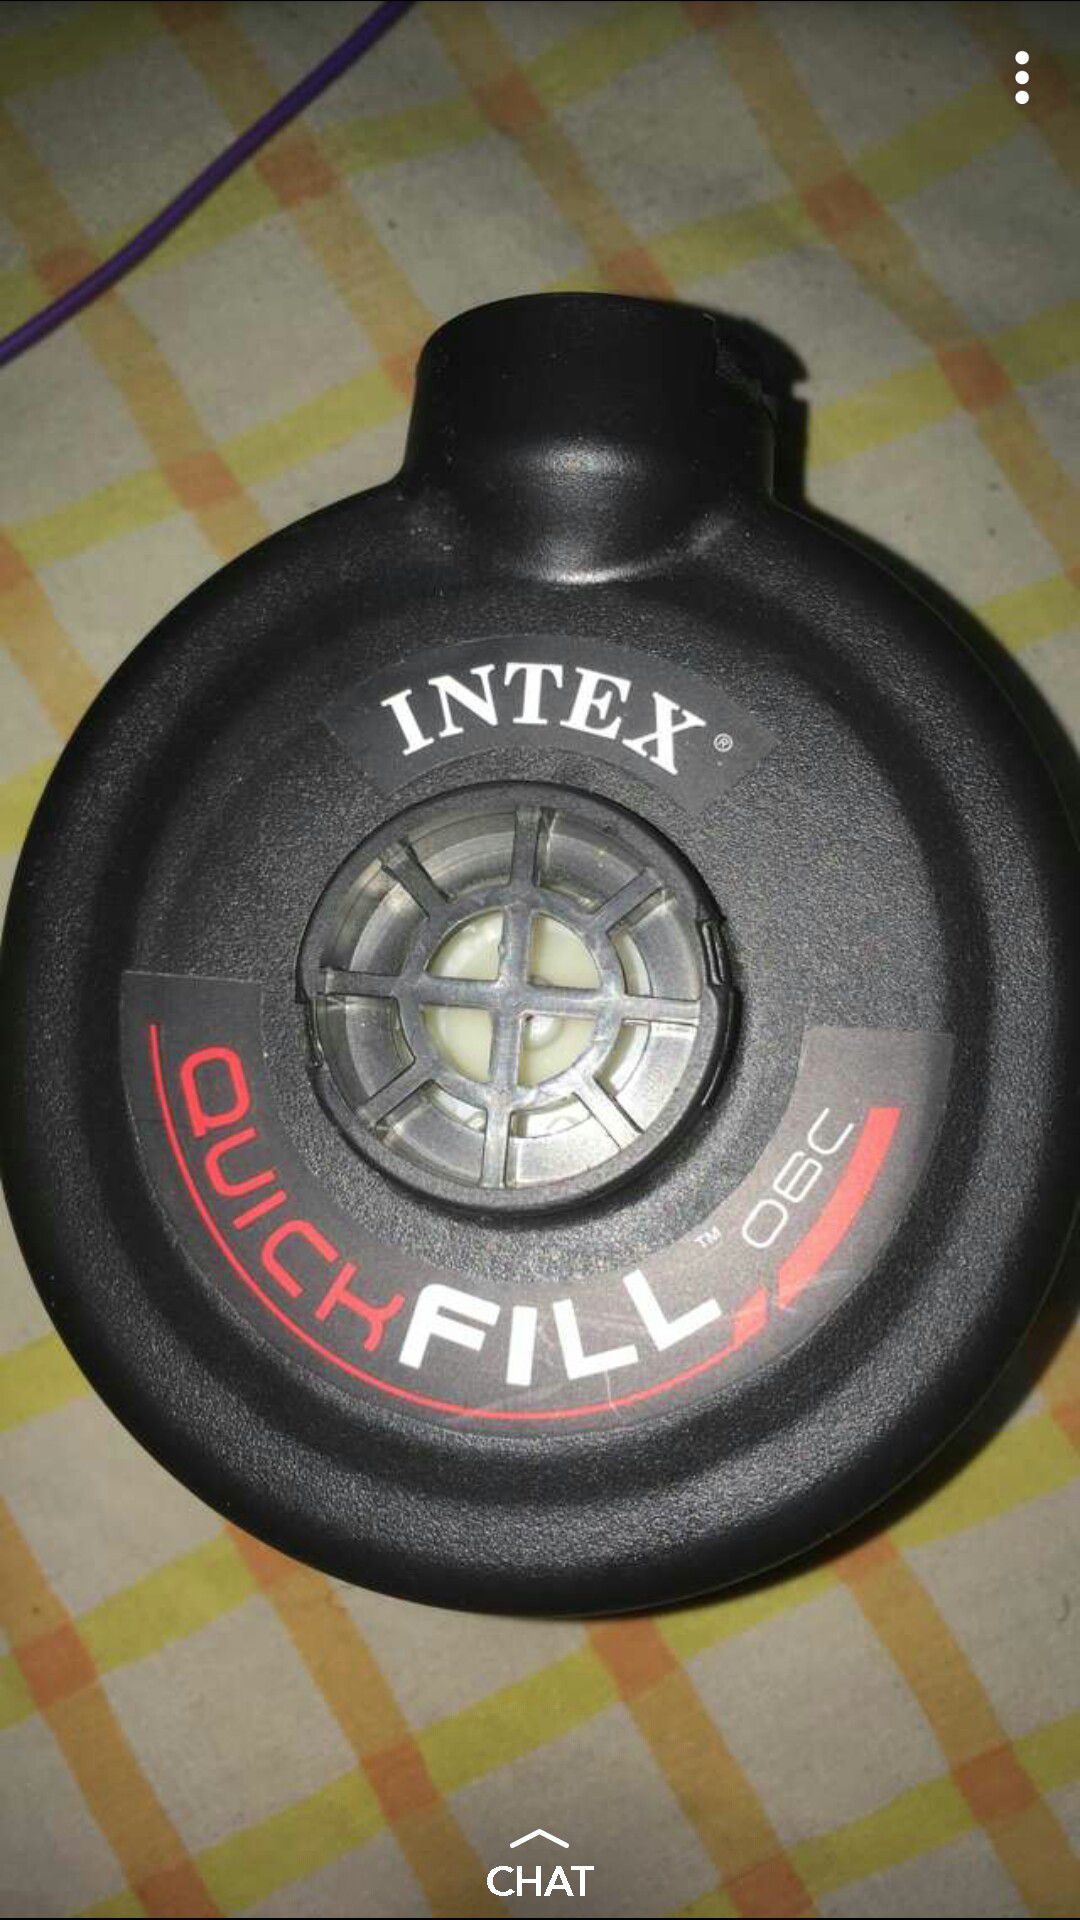 Intex Quick Full 06c Pump